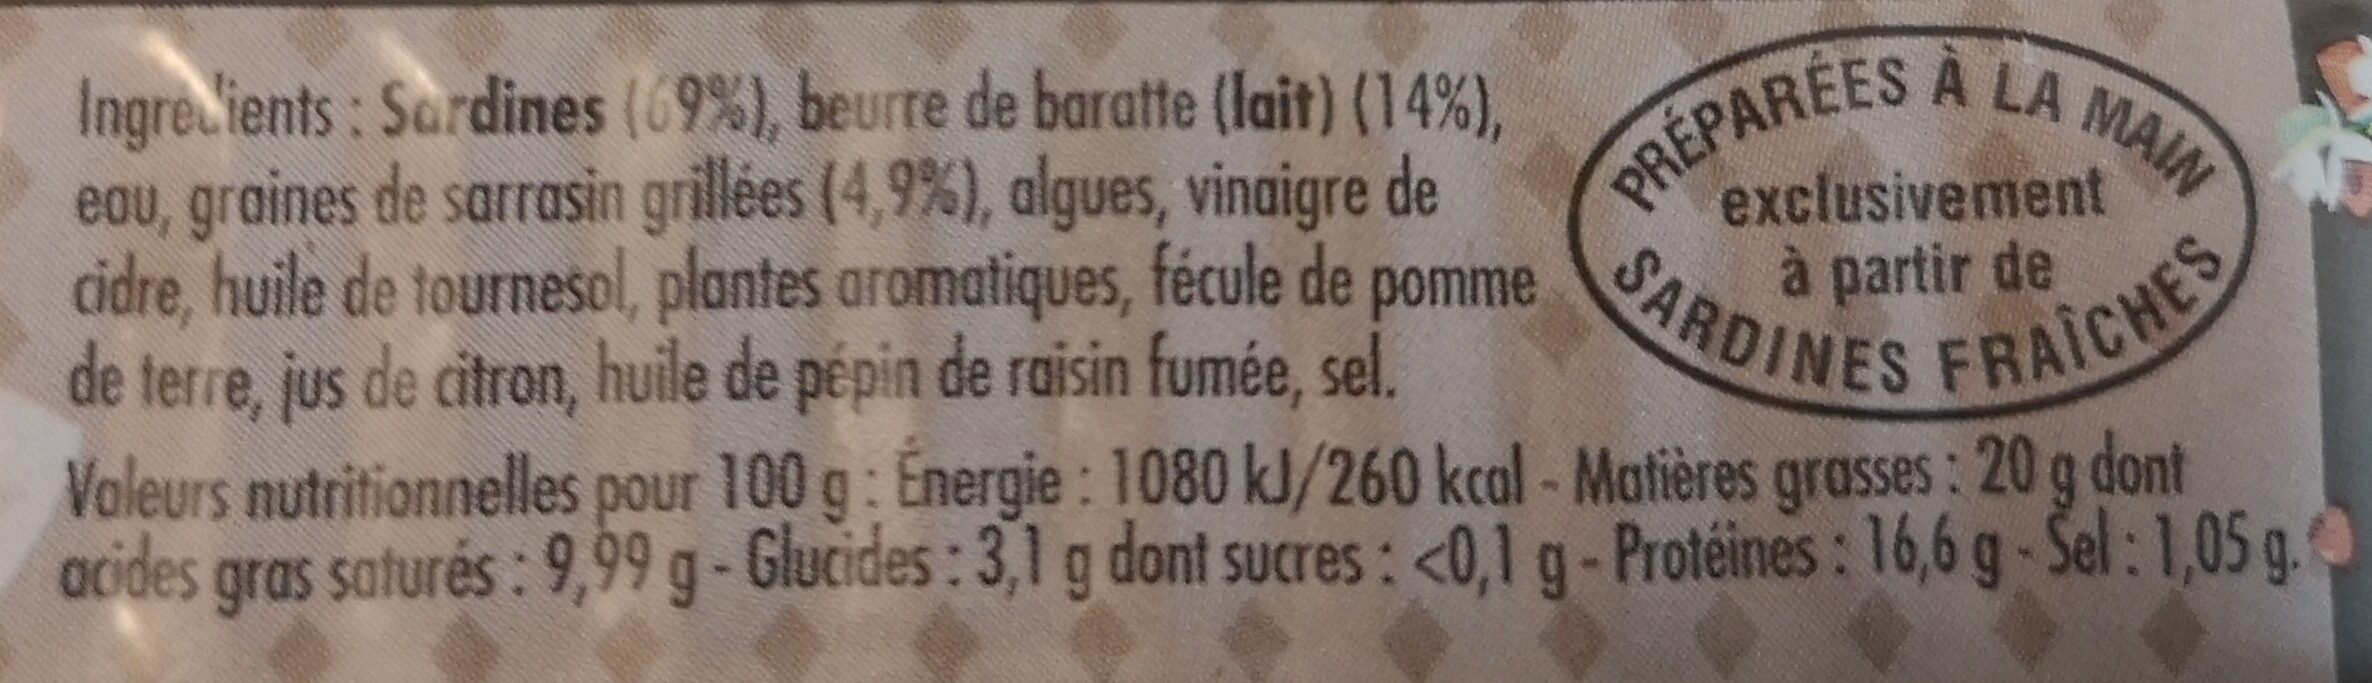 Sardines cuisinées au sarrazin et au beurre de baratte - Nutrition facts - fr